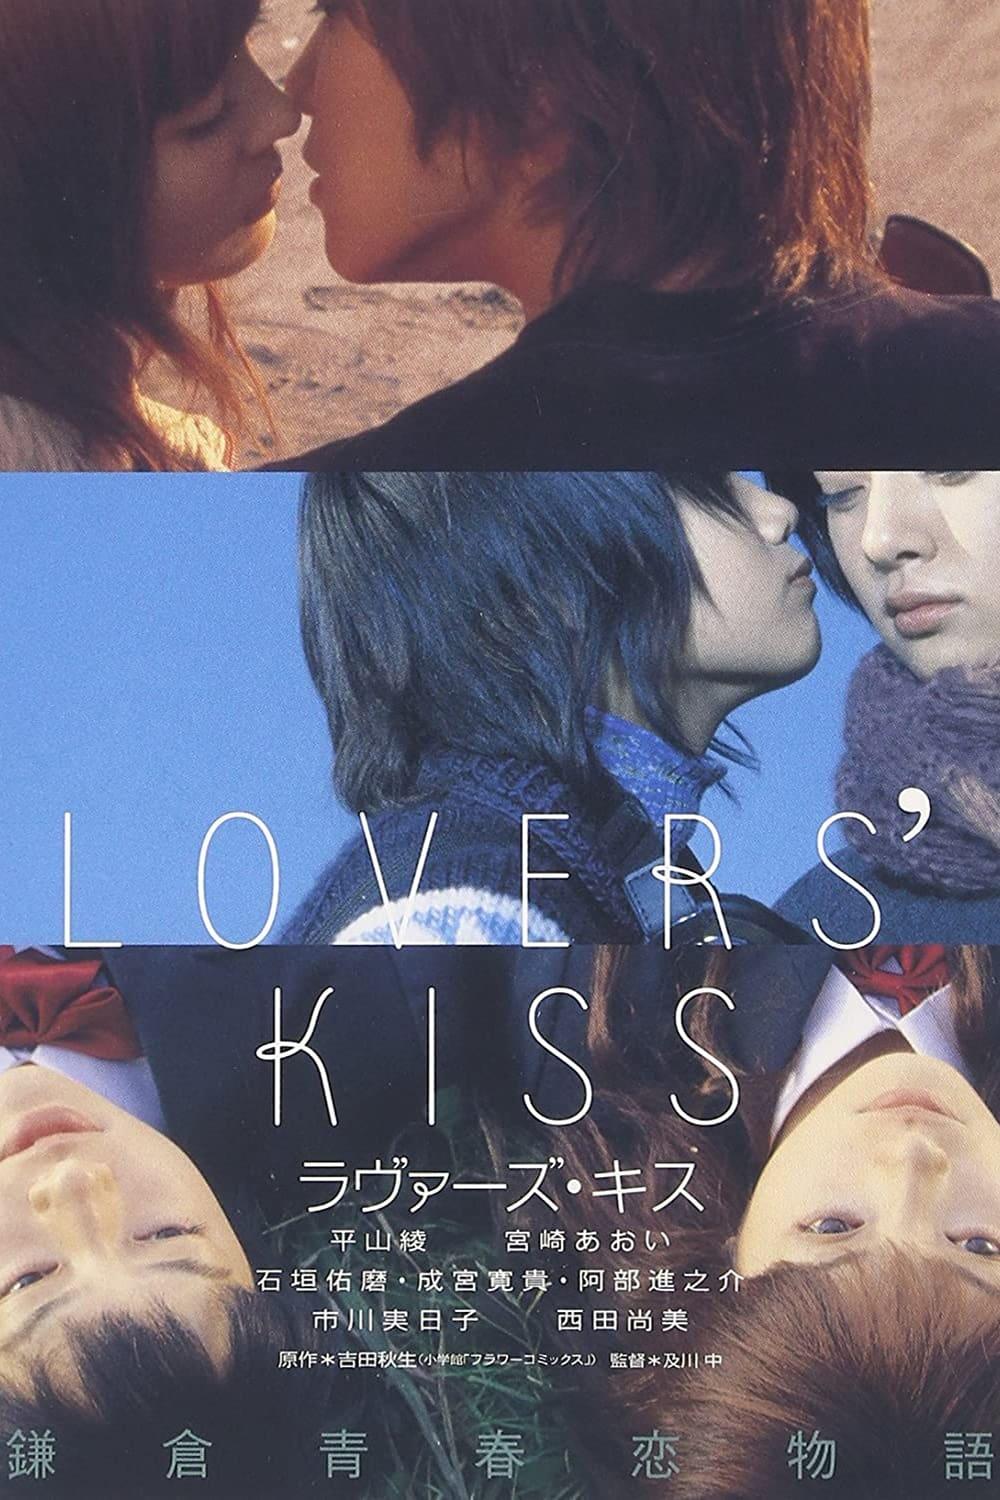 ラヴァーズ・キス poster